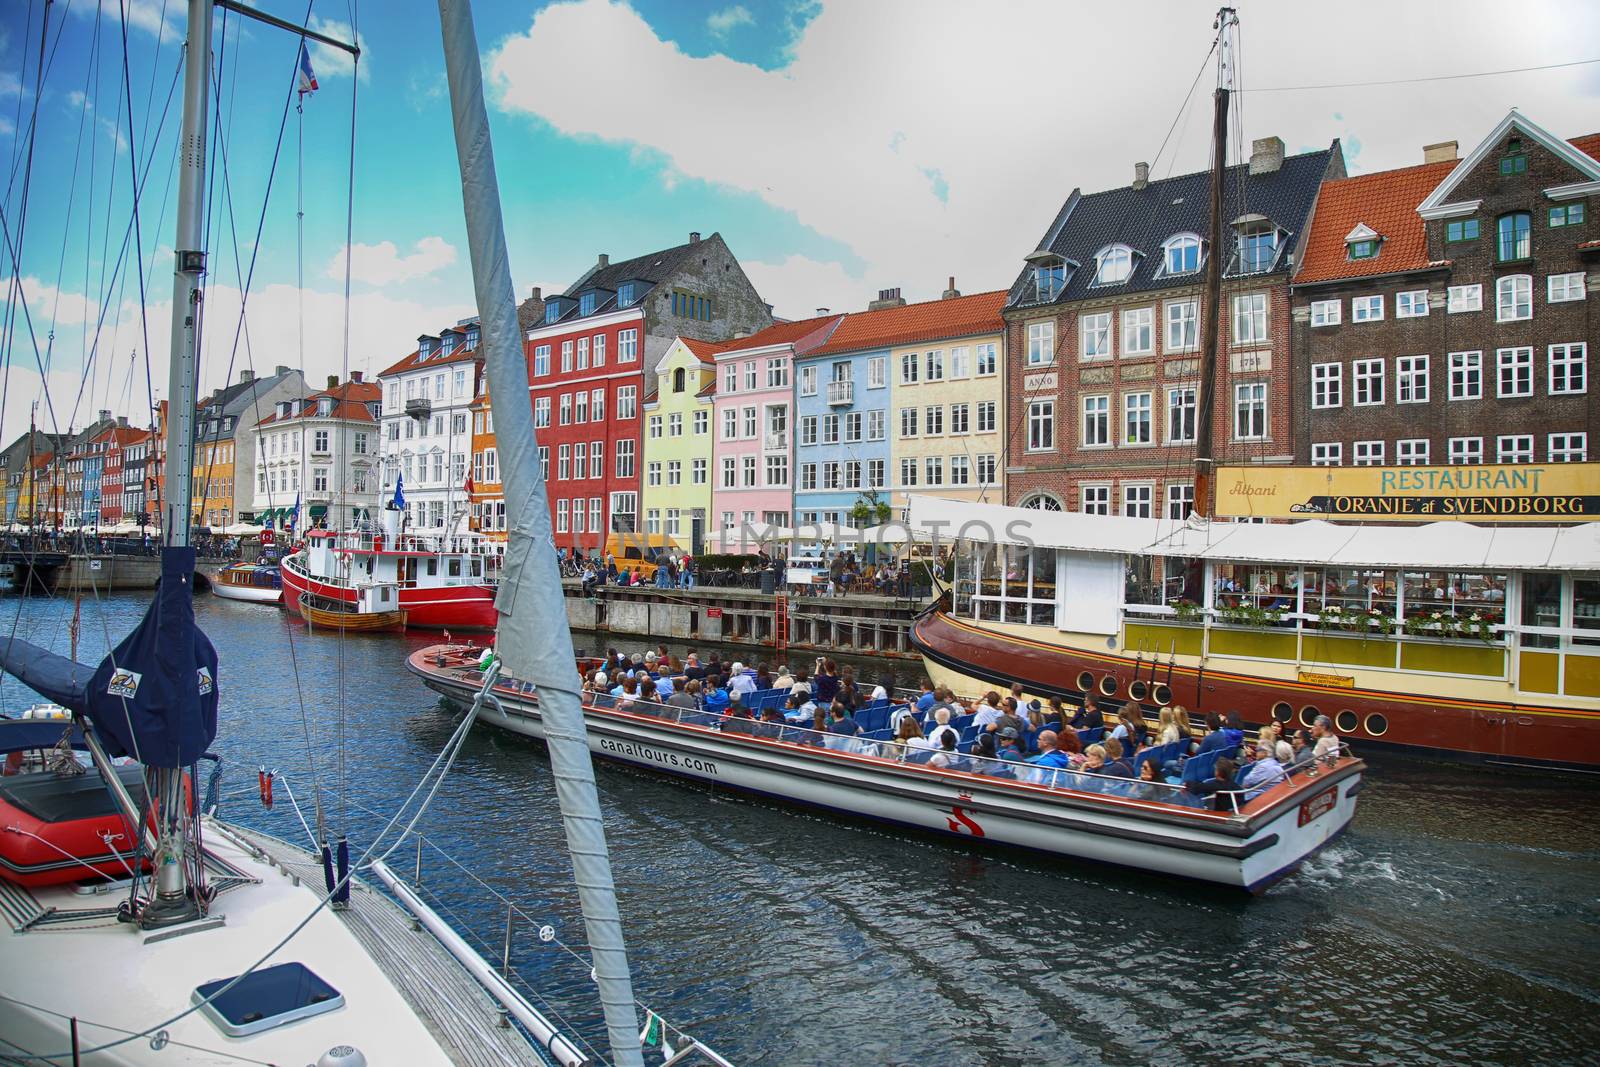 Nyhavn harbour in Copenhagen, Denmark by vladacanon